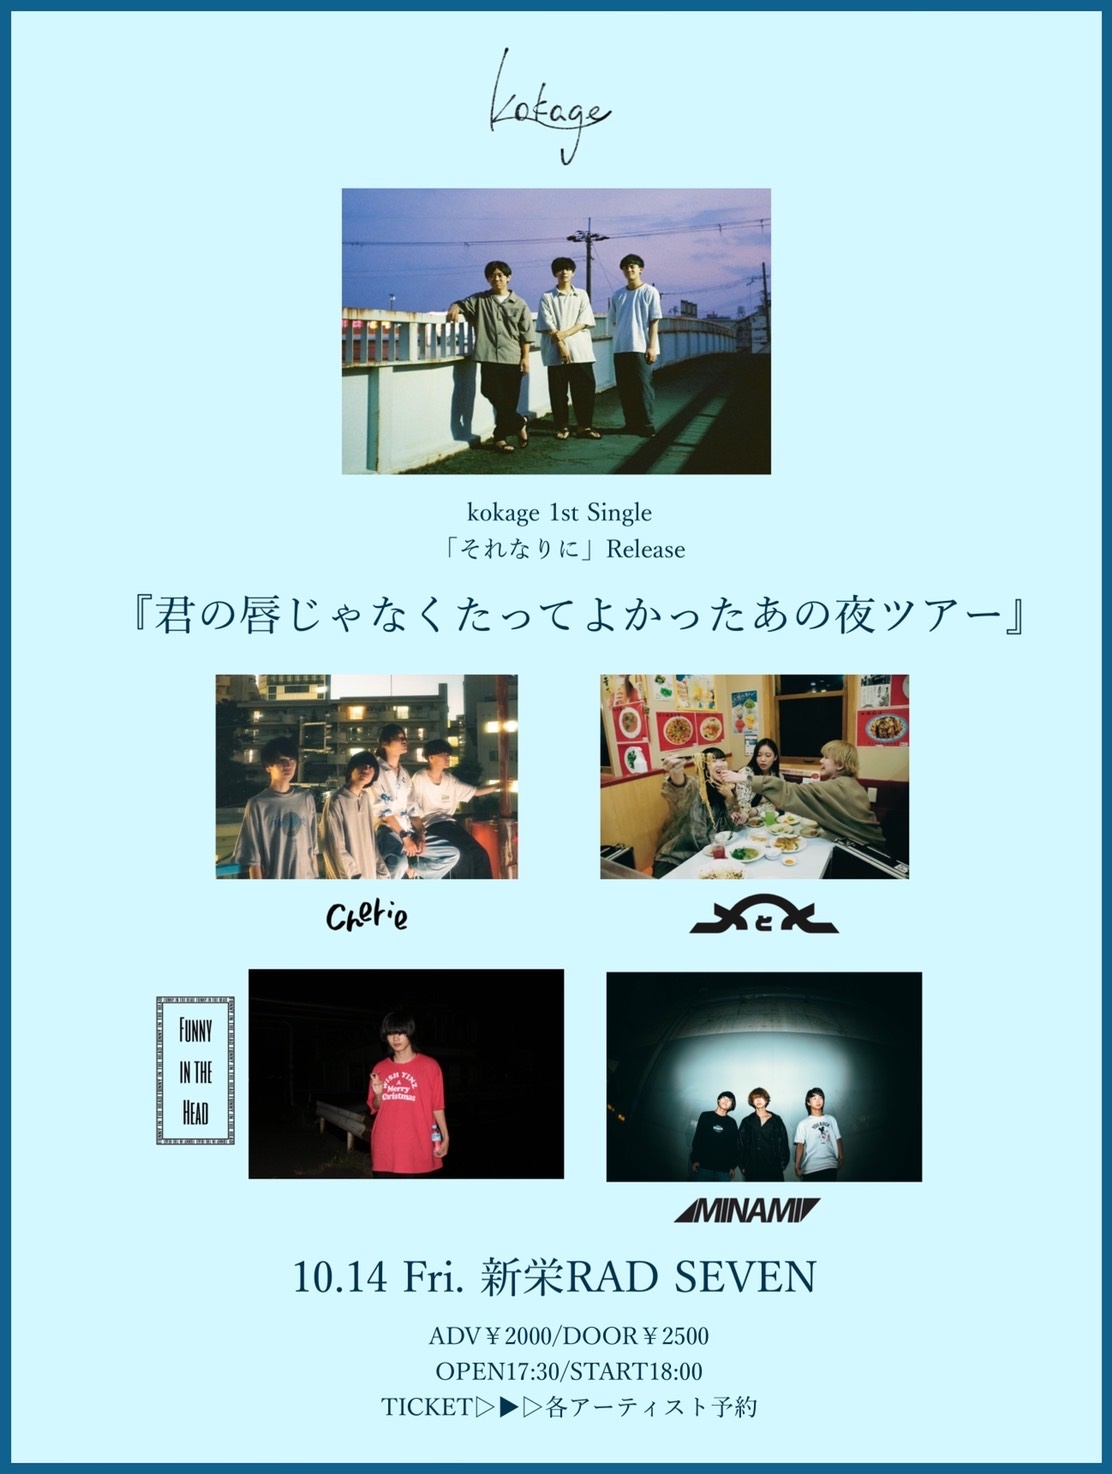 kokage 1st Single「それなりに」Release 『君の唇じゃなくたってよかったあの夜ツアー』